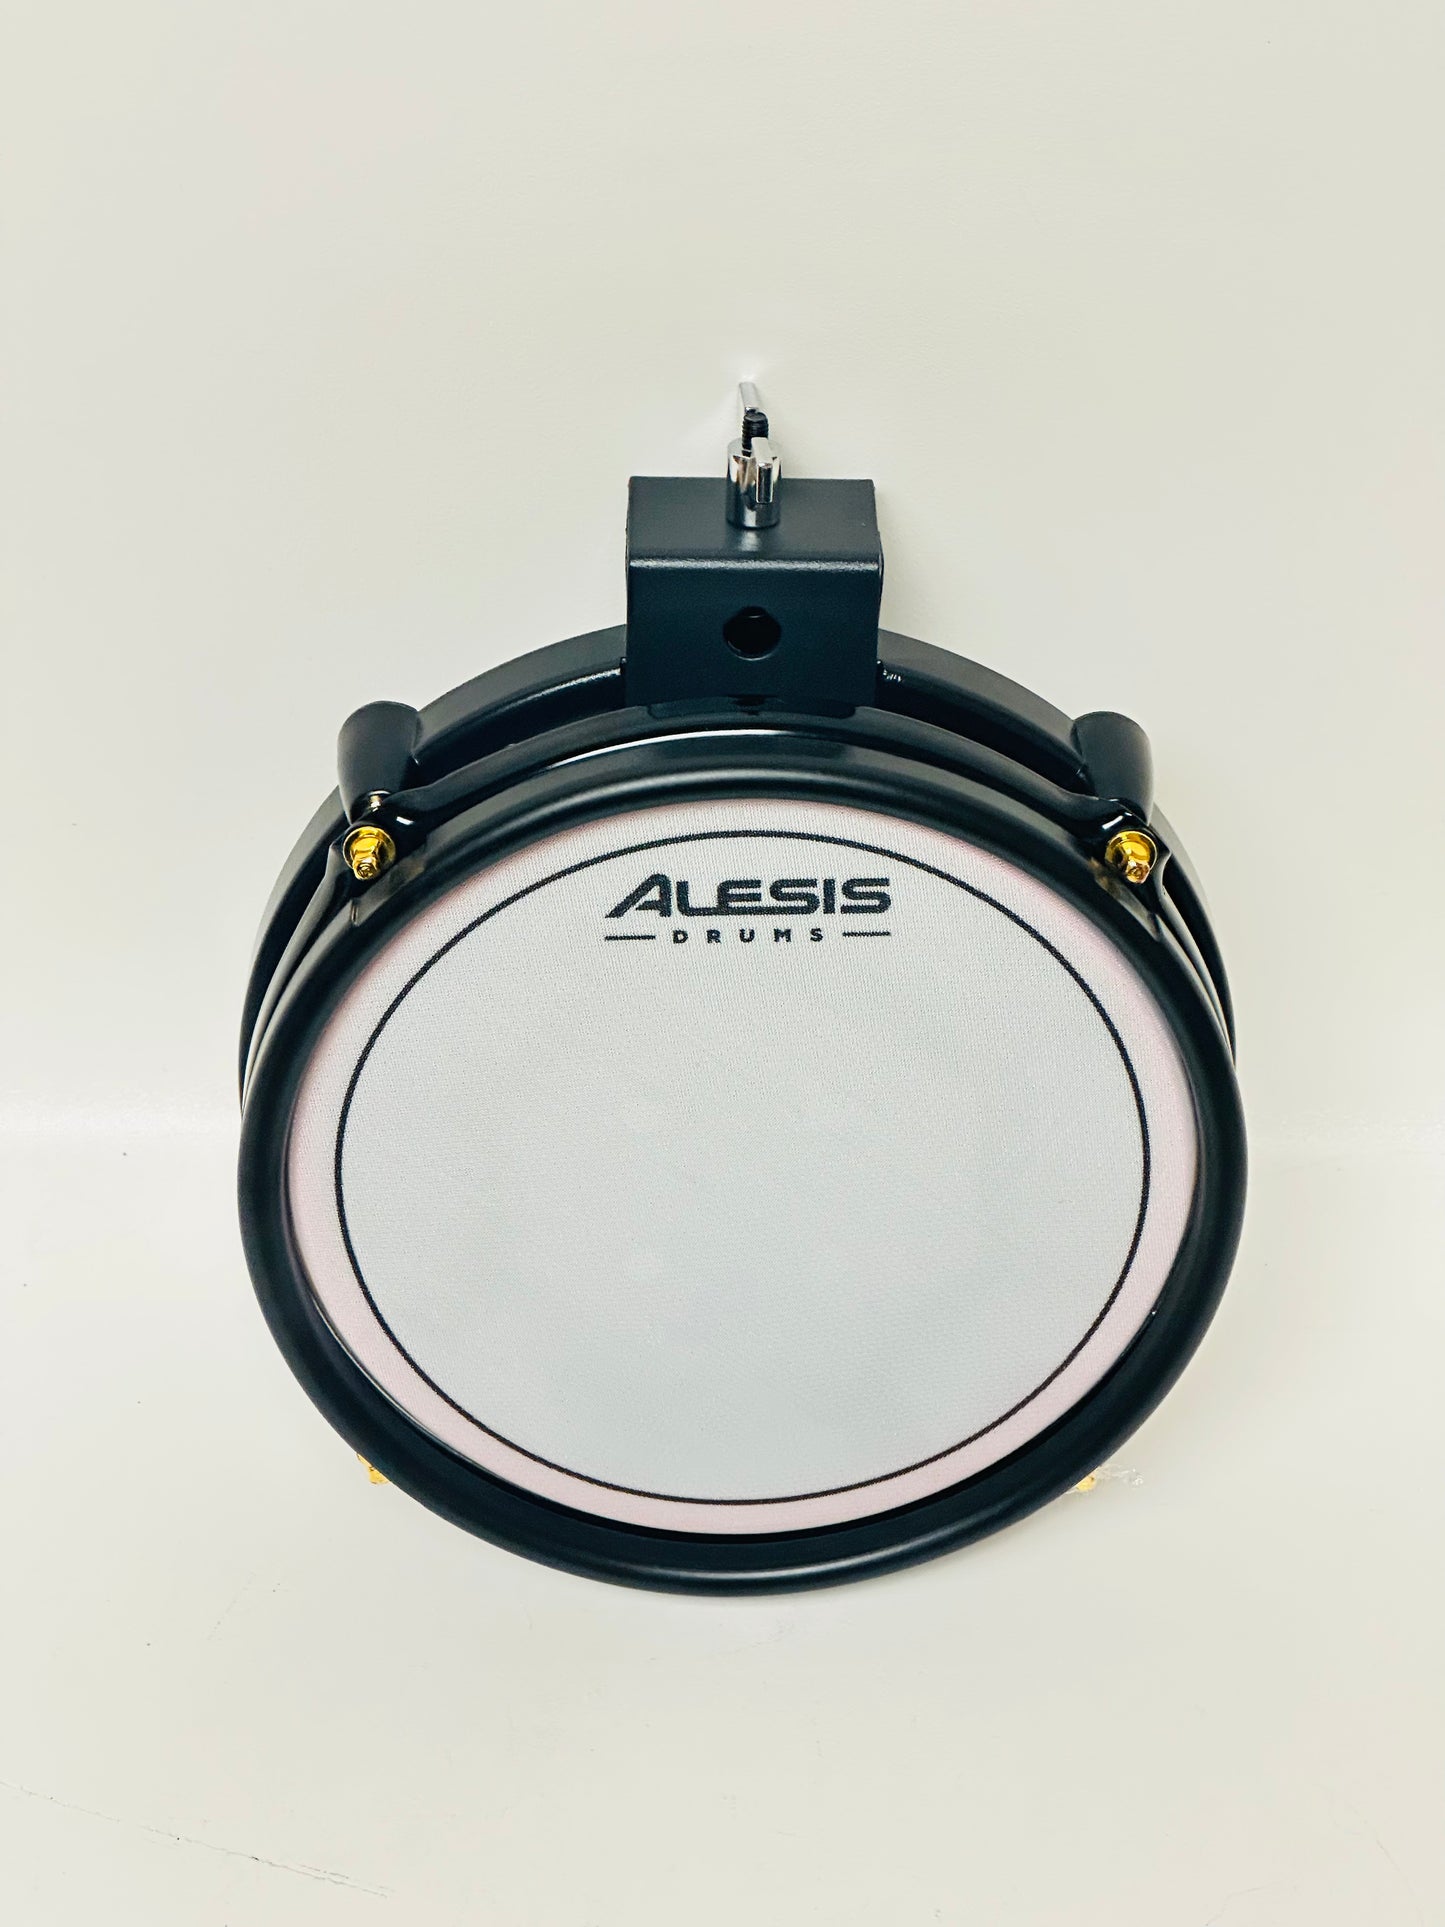 Alesis Crimson Special Edition 8” Mesh Drum Pad SE